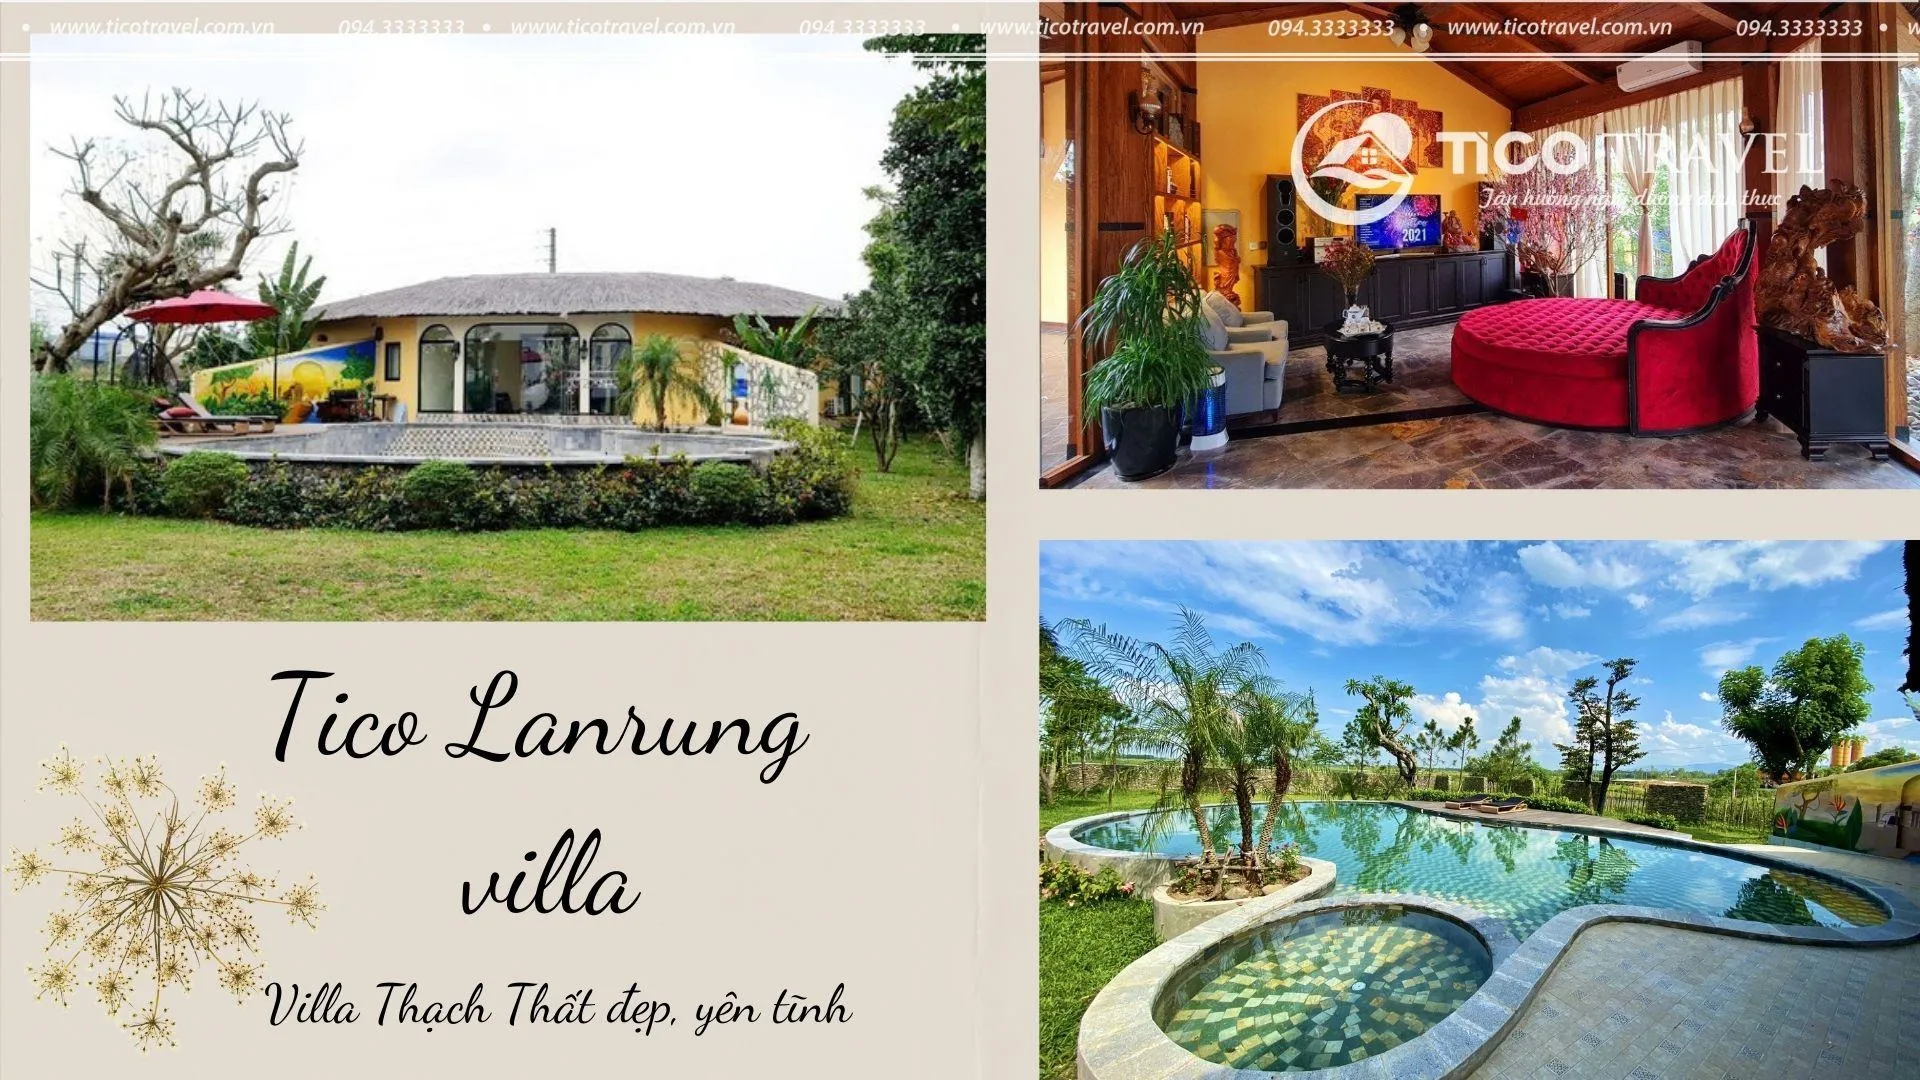 Villa gần Hà Nội Tico Lanrung house  